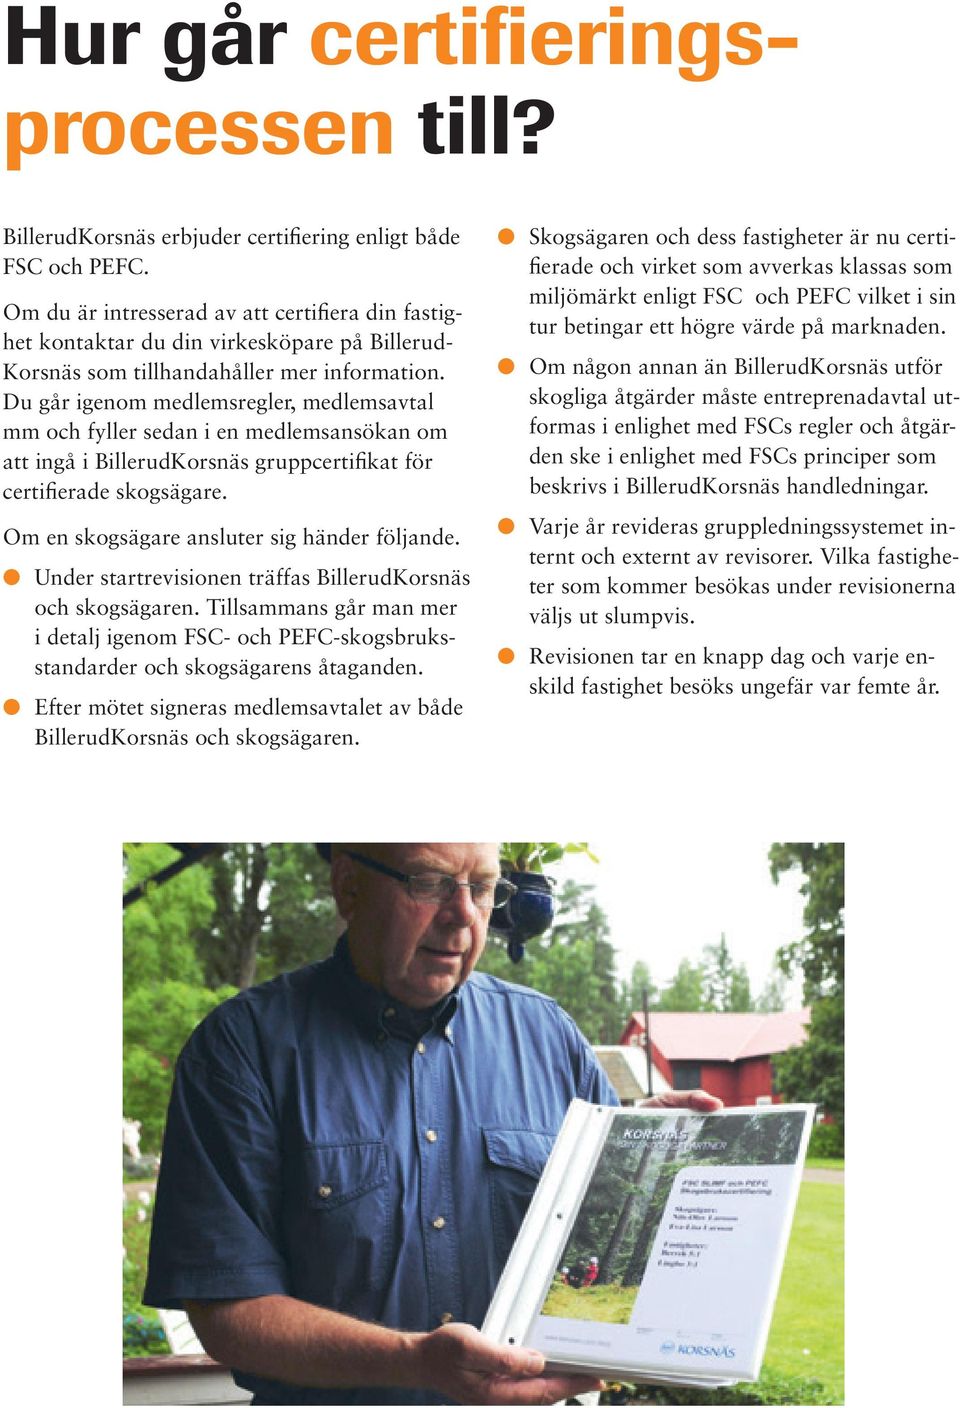 Du går igenom medlemsregler, medlemsavtal mm och fyller sedan i en medlemsansökan om att ingå i BillerudKorsnäs gruppcertifikat för certifierade skogsägare.